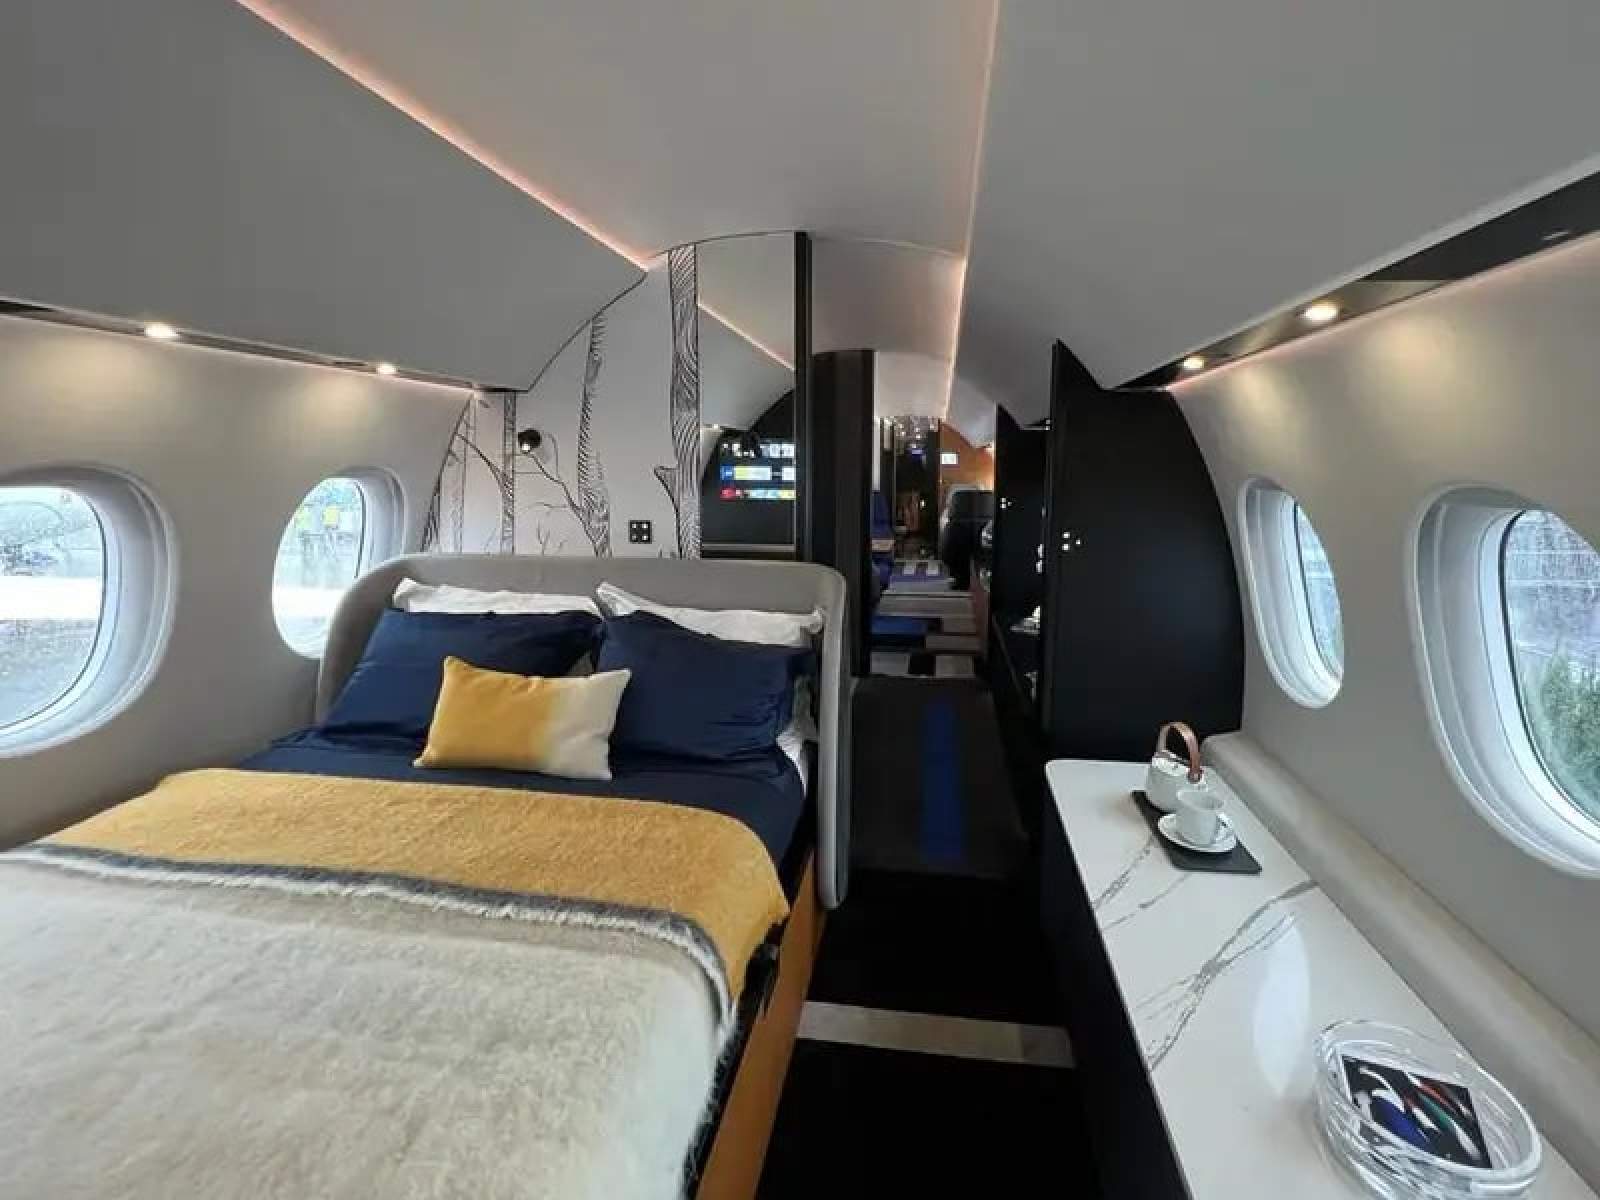 Bên trong chiếc máy bay triệu bạc được mệnh danh là “căn penthouse của bầu trời” - Ảnh 4.